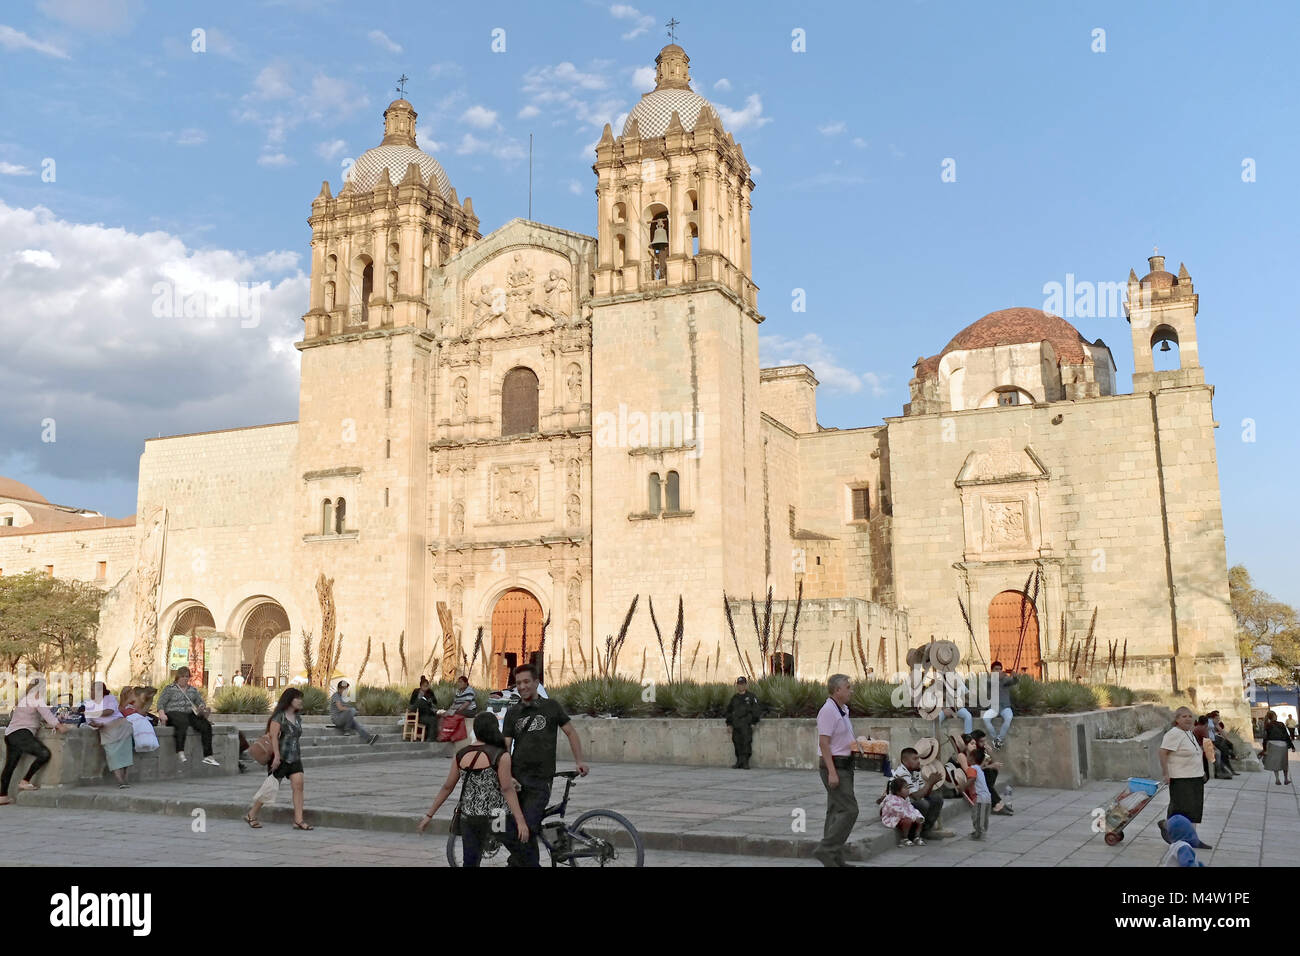 The Templo de Santo Domingo, also known as the Churt of Santo Domingo stands in Oaxaca, Mexico. Stock Photo